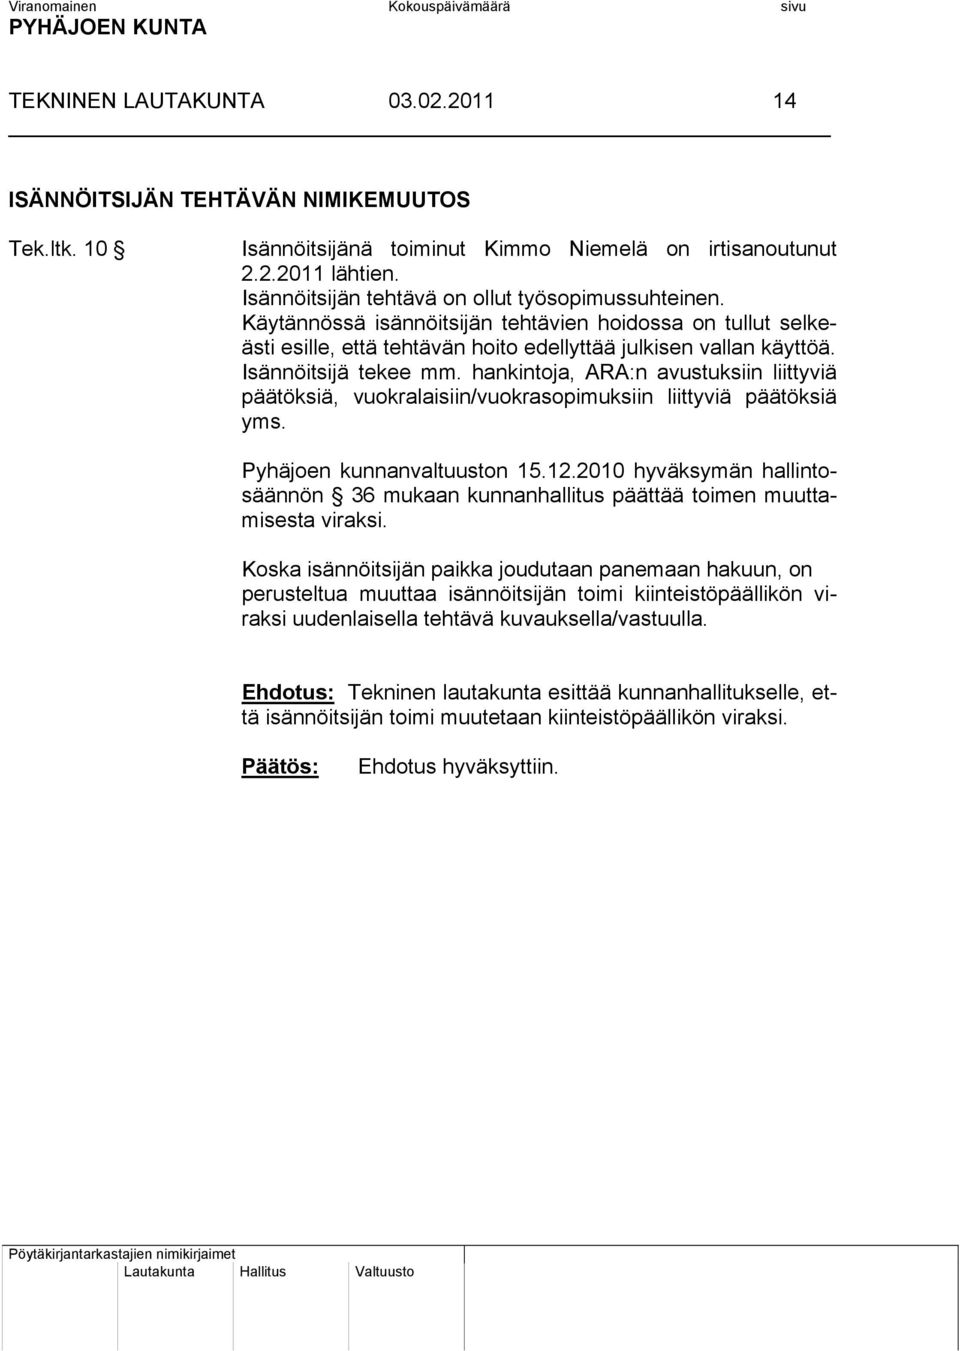 hankintoja, ARA:n avustuksiin liittyviä päätöksiä, vuokralaisiin/vuokrasopimuksiin liittyviä päätöksiä yms. Pyhäjoen kunnanvaltuuston 15.12.